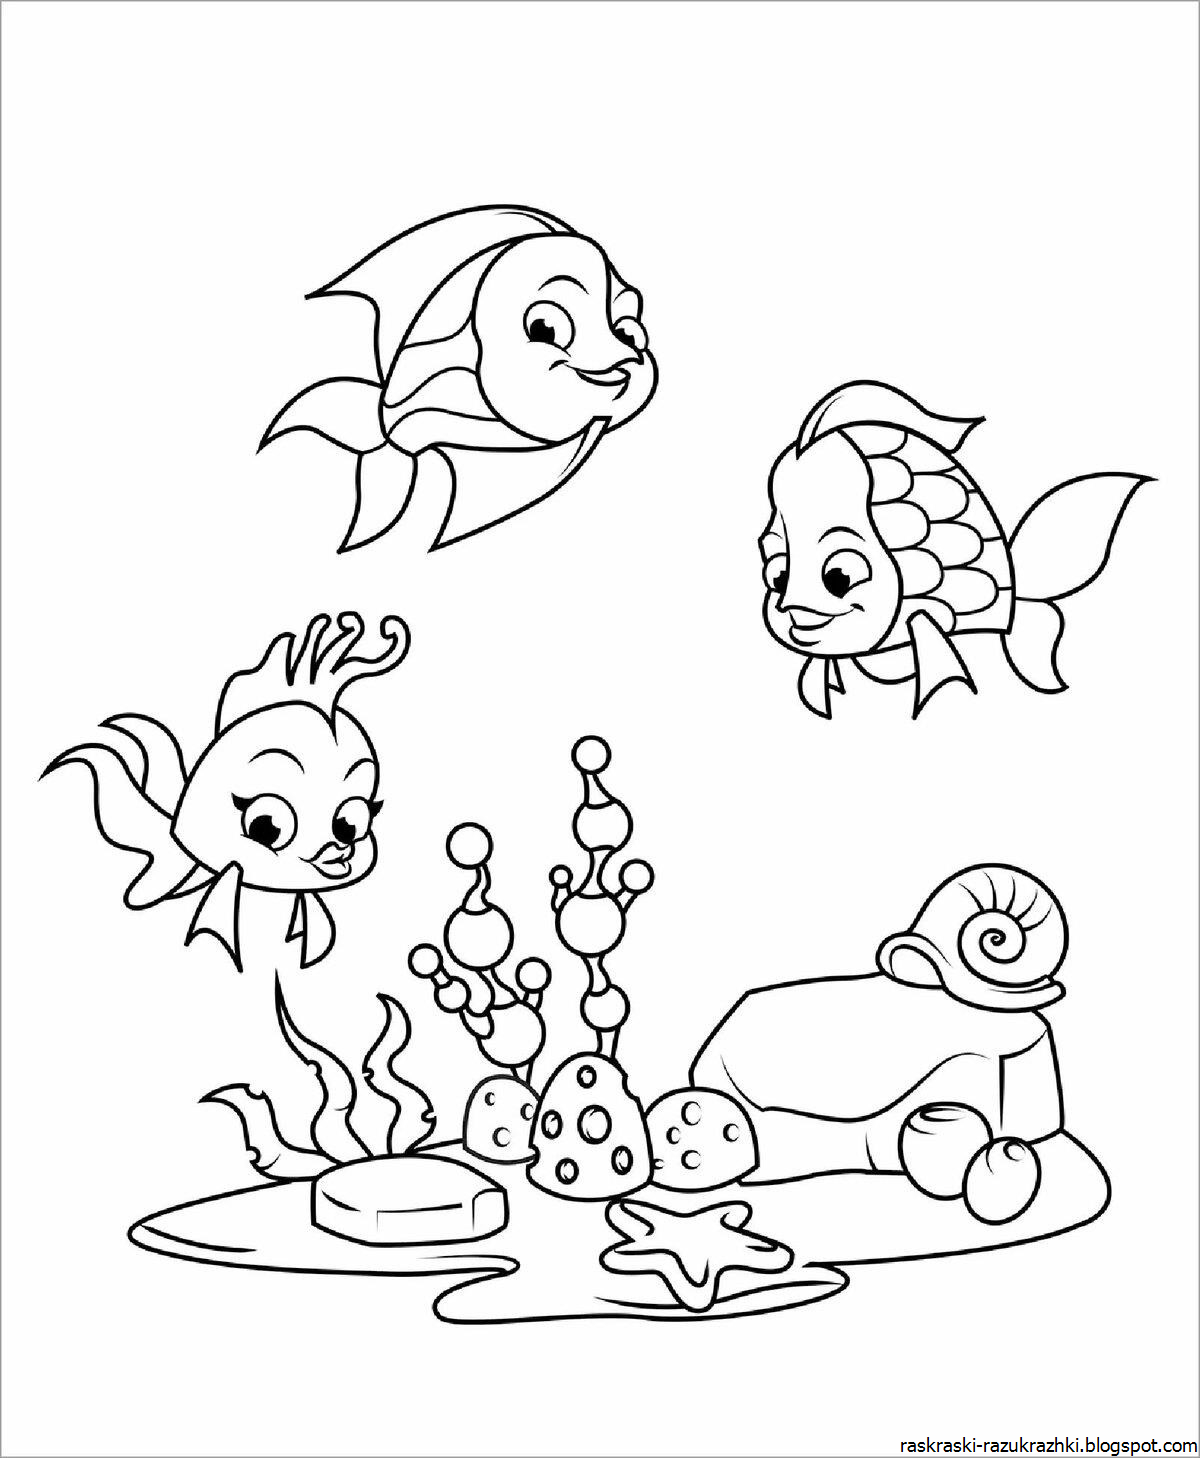 Раскраска рыбки для детей 5 6 лет. Раскраска рыбка. Аквариумные рыбки раскраска. Детские раскраски рыбки. Рыбка раскраска для детей.